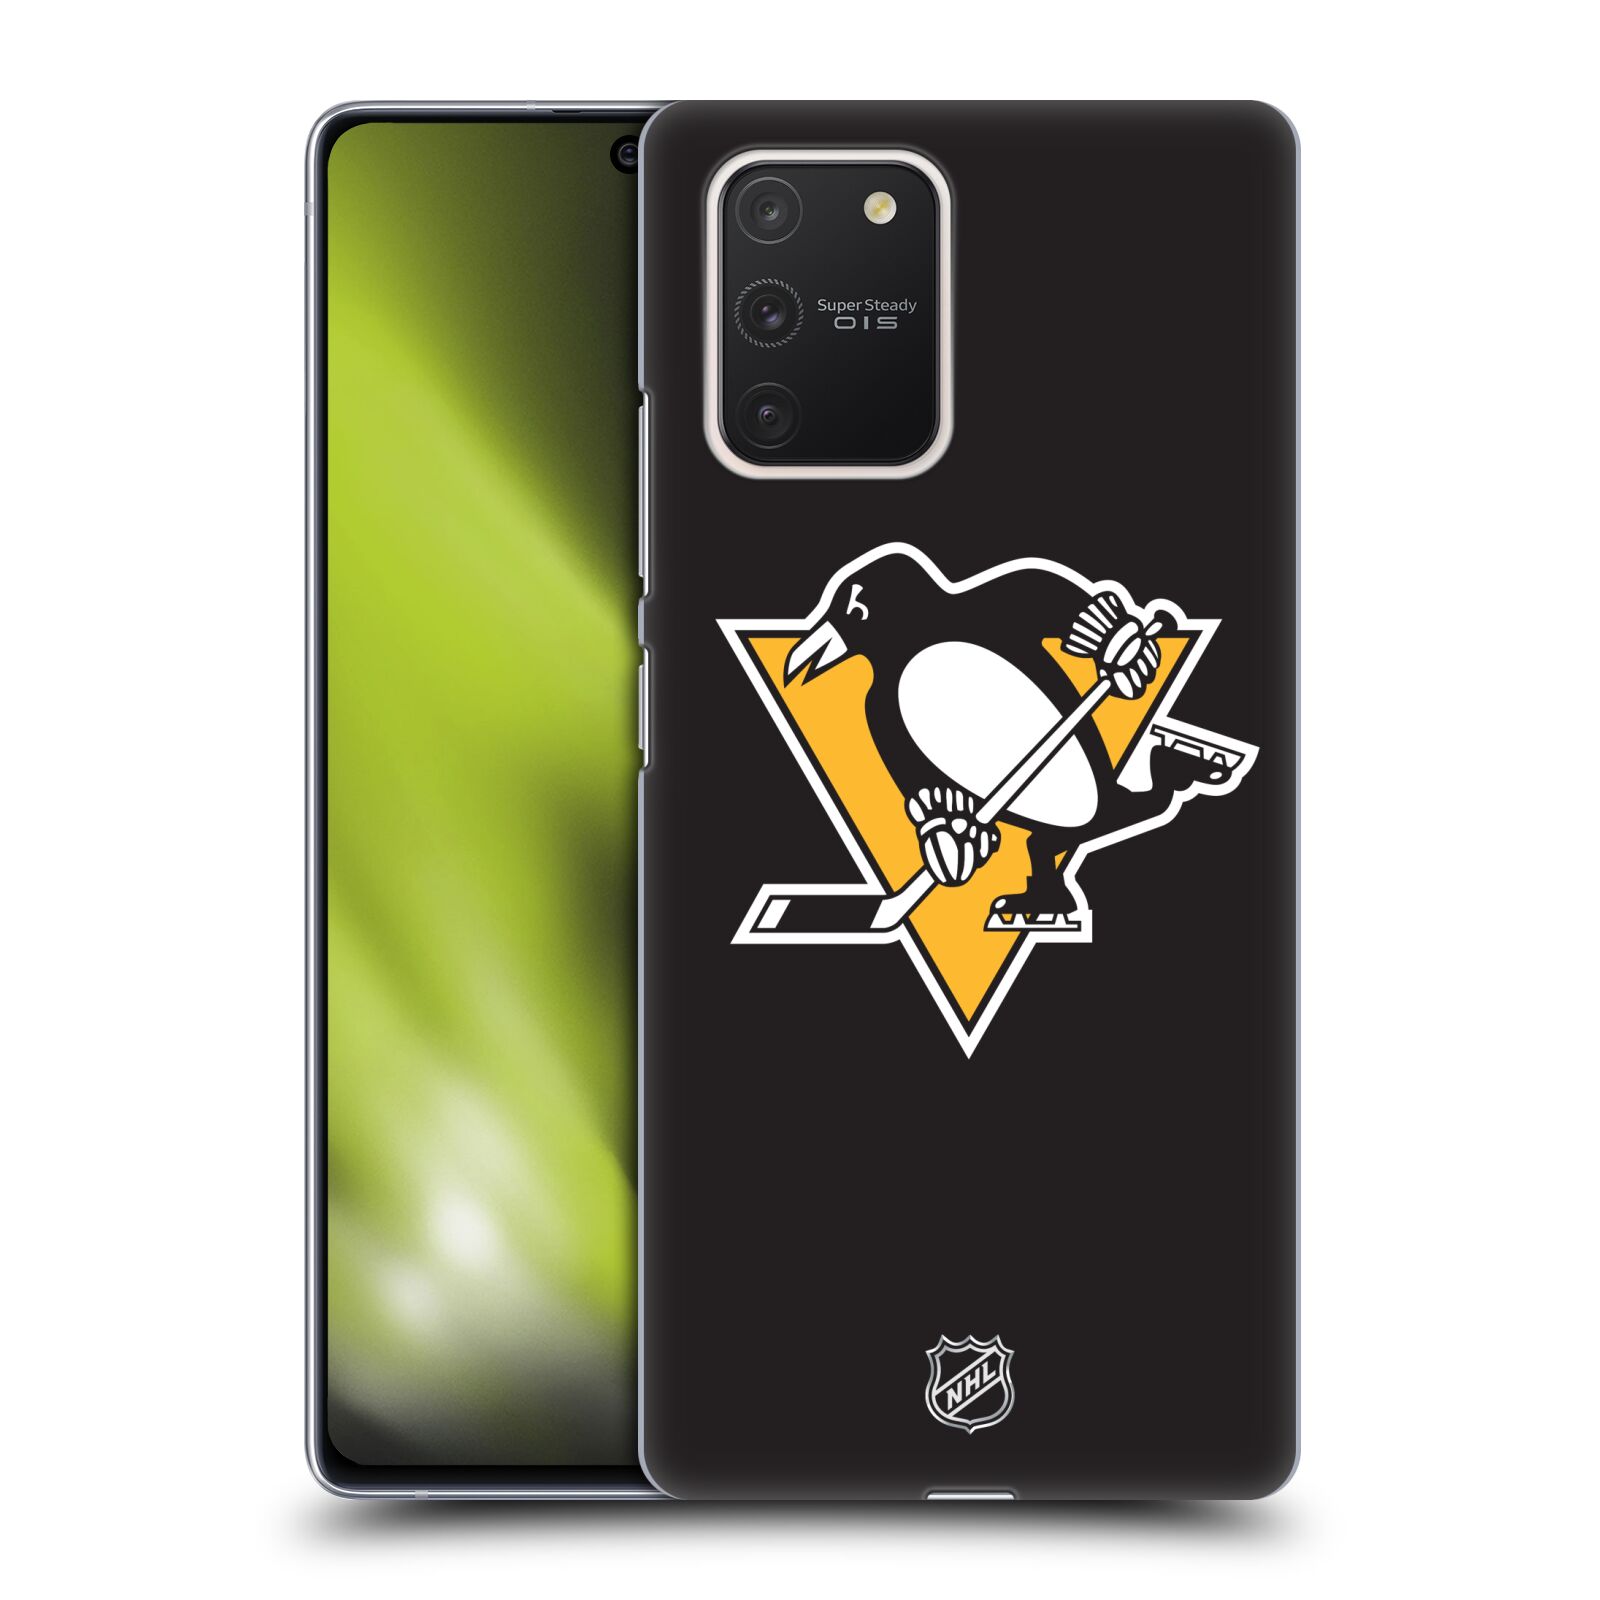 Pouzdro na mobil Samsung Galaxy S10 LITE - HEAD CASE - Hokej NHL - Pittsburgh Penguins - černé pozadí znak